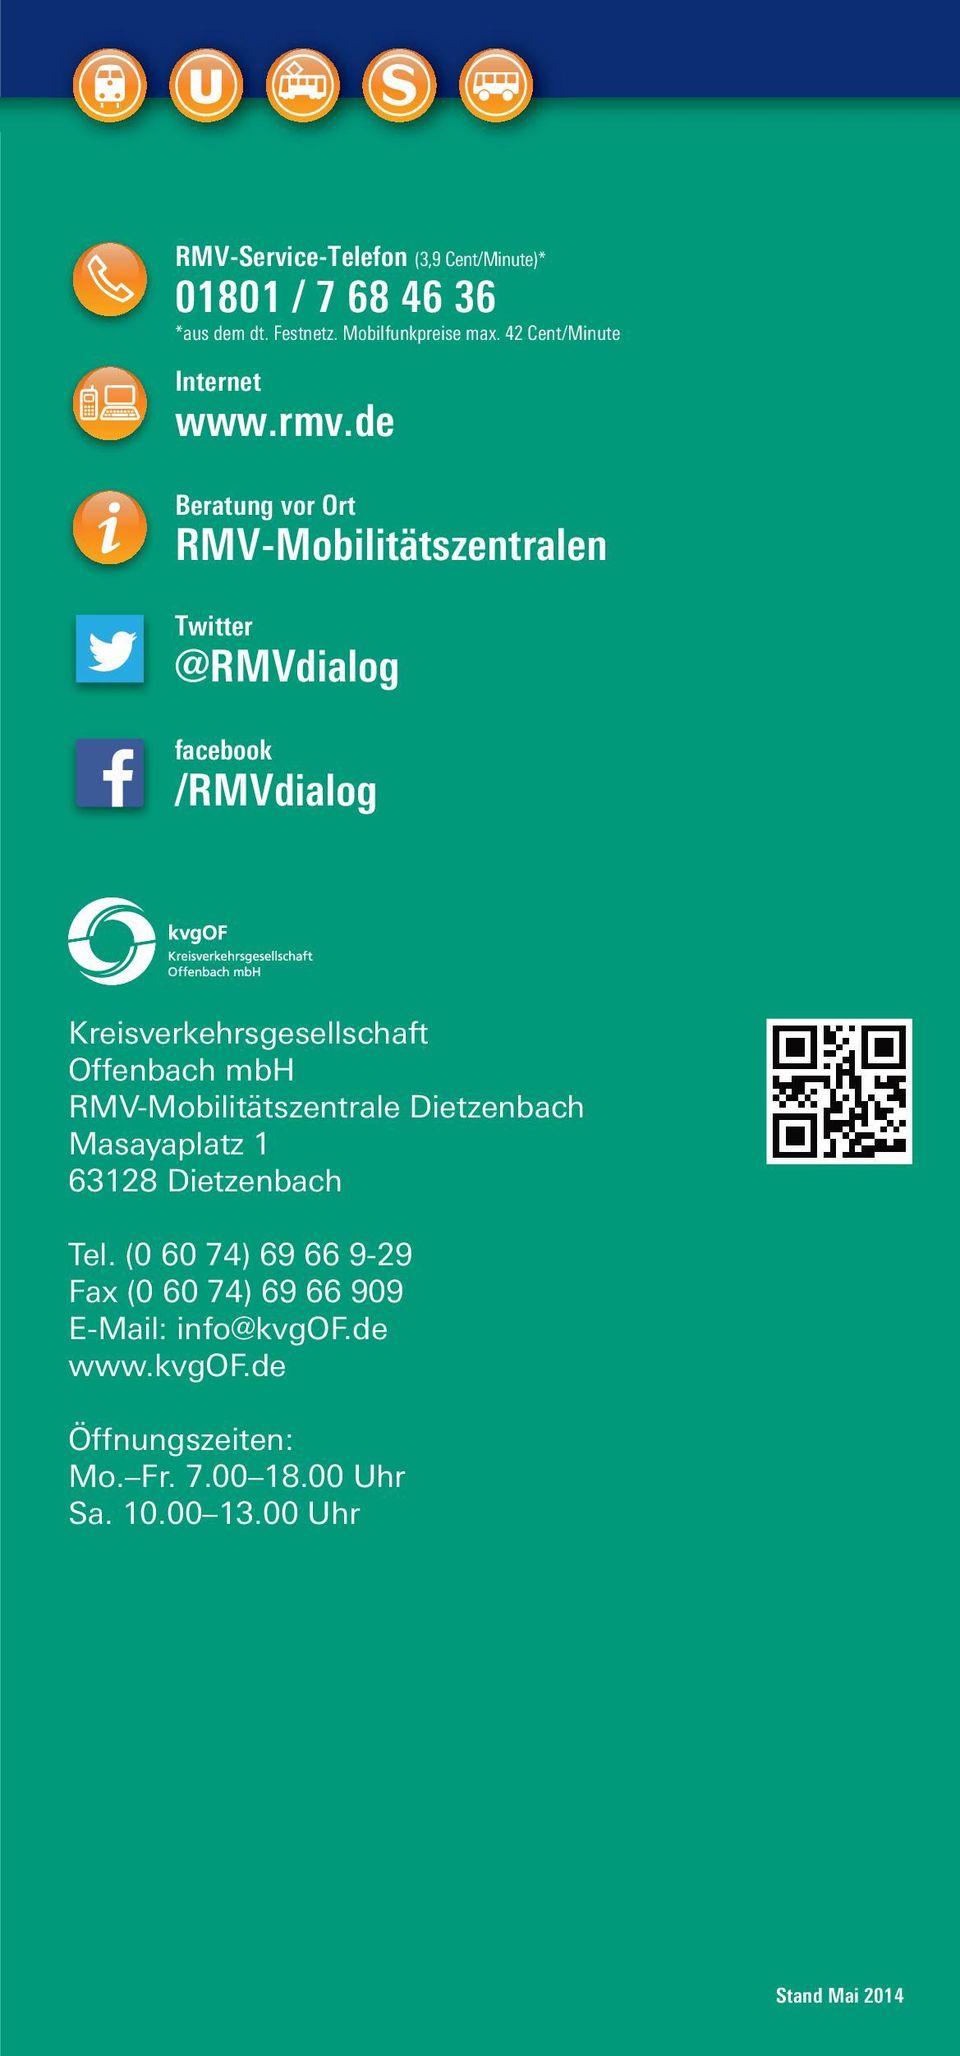 de Beratung vor Ort RMV-Mobilitätszentralen Twitter @RMVdialog facebook /RMVdialog Kreisverkehrsgesellschaft Offenbach